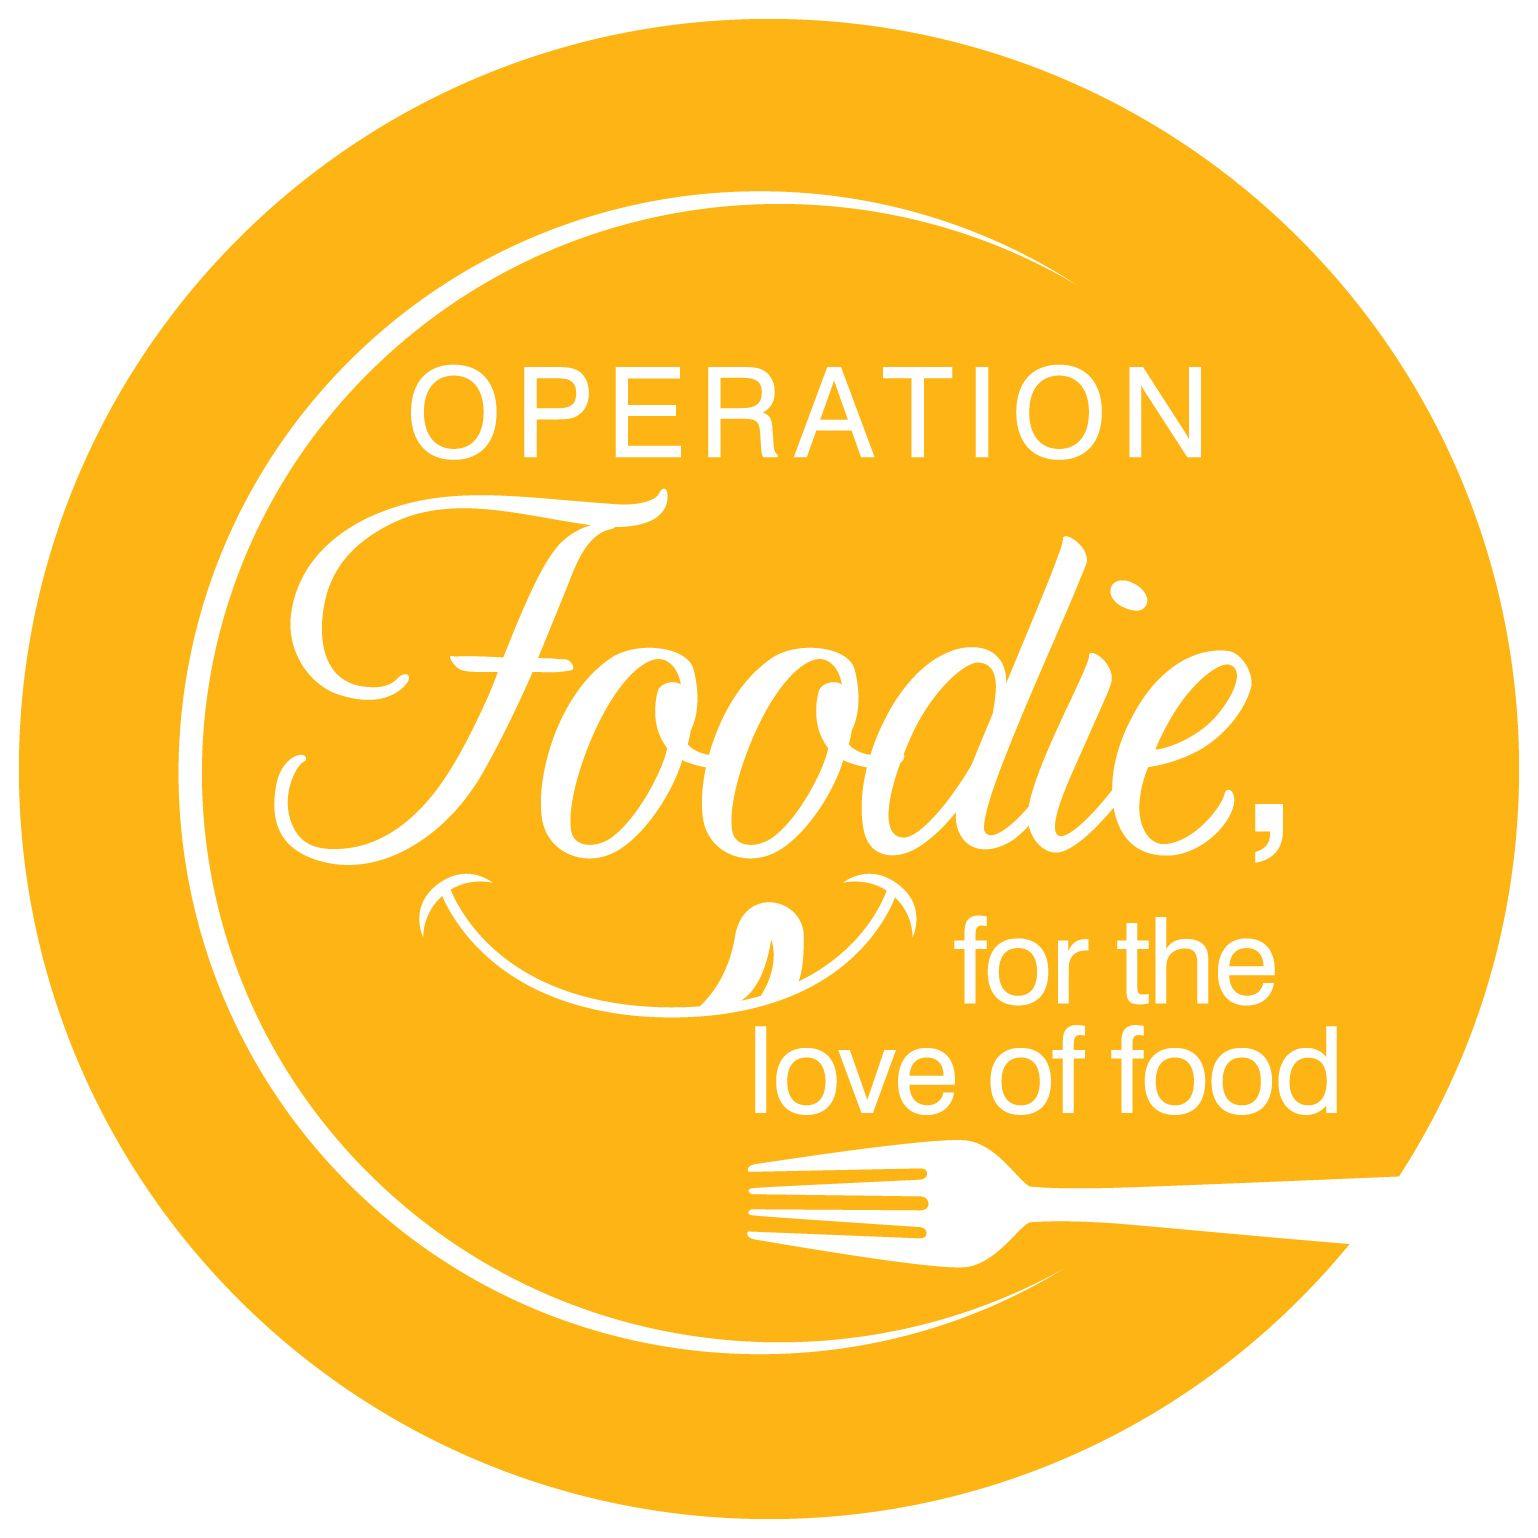 Foodie Logo - Operation Foodie